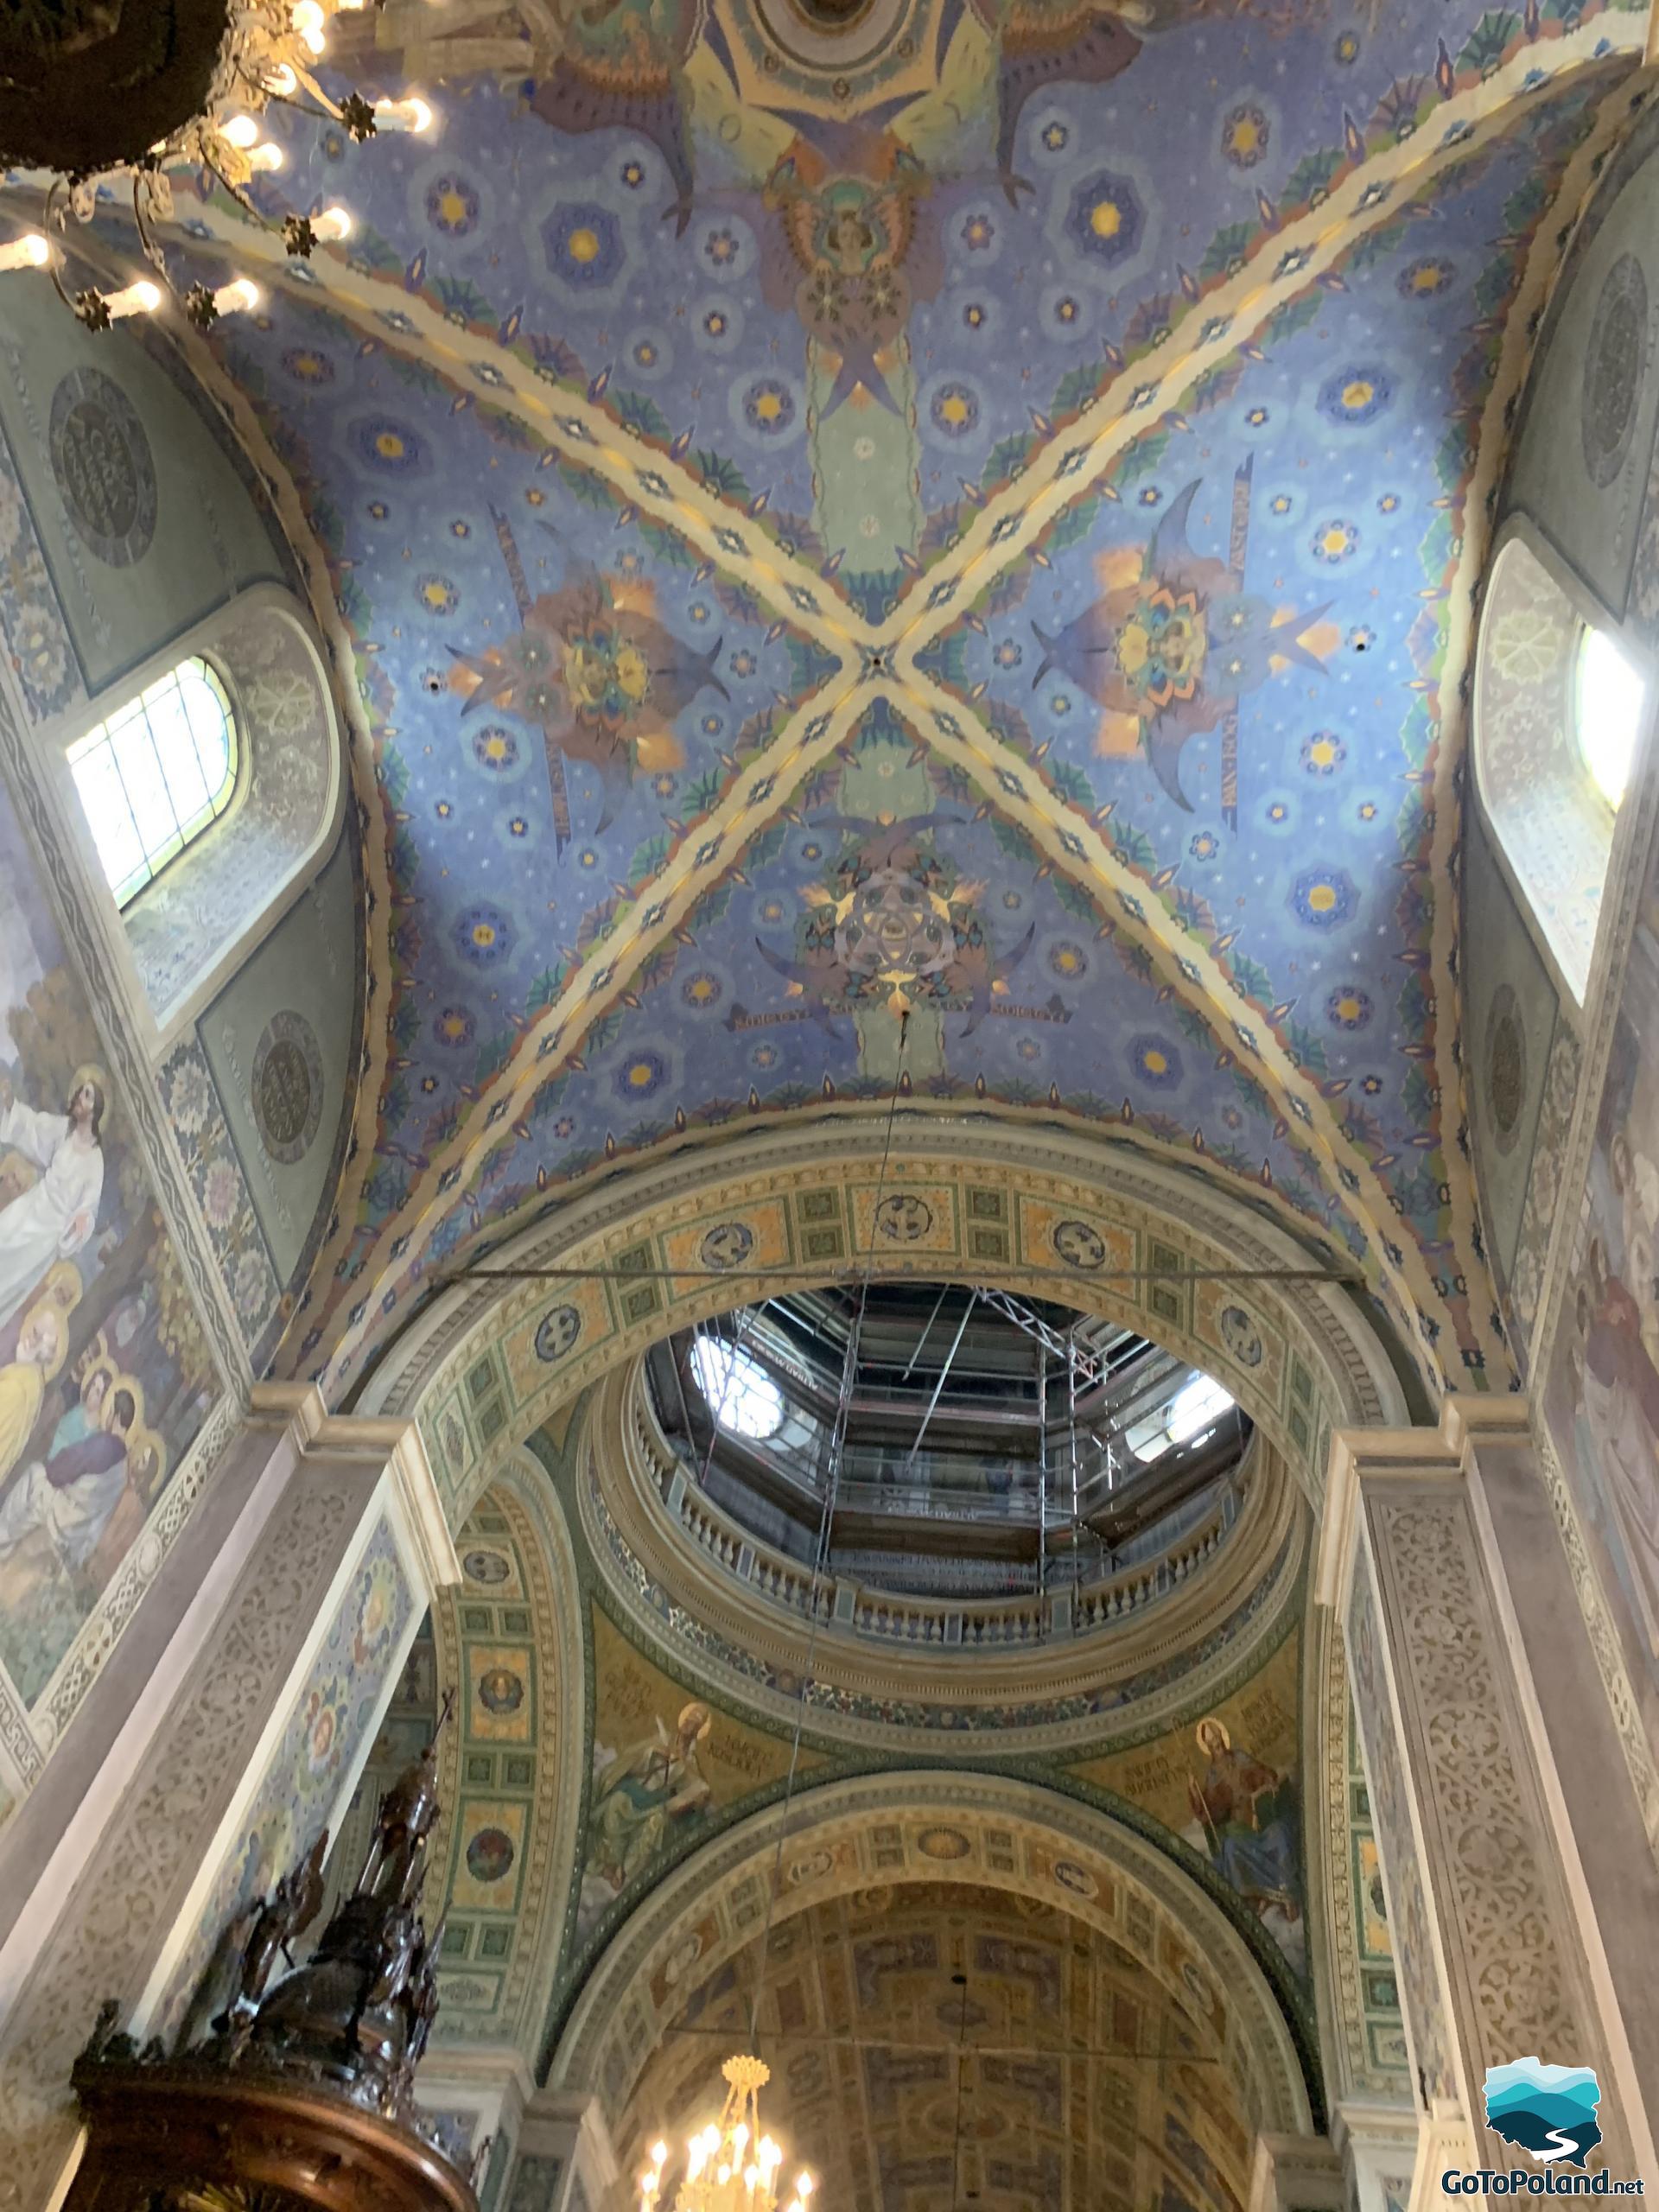 A blue ceiling in a church